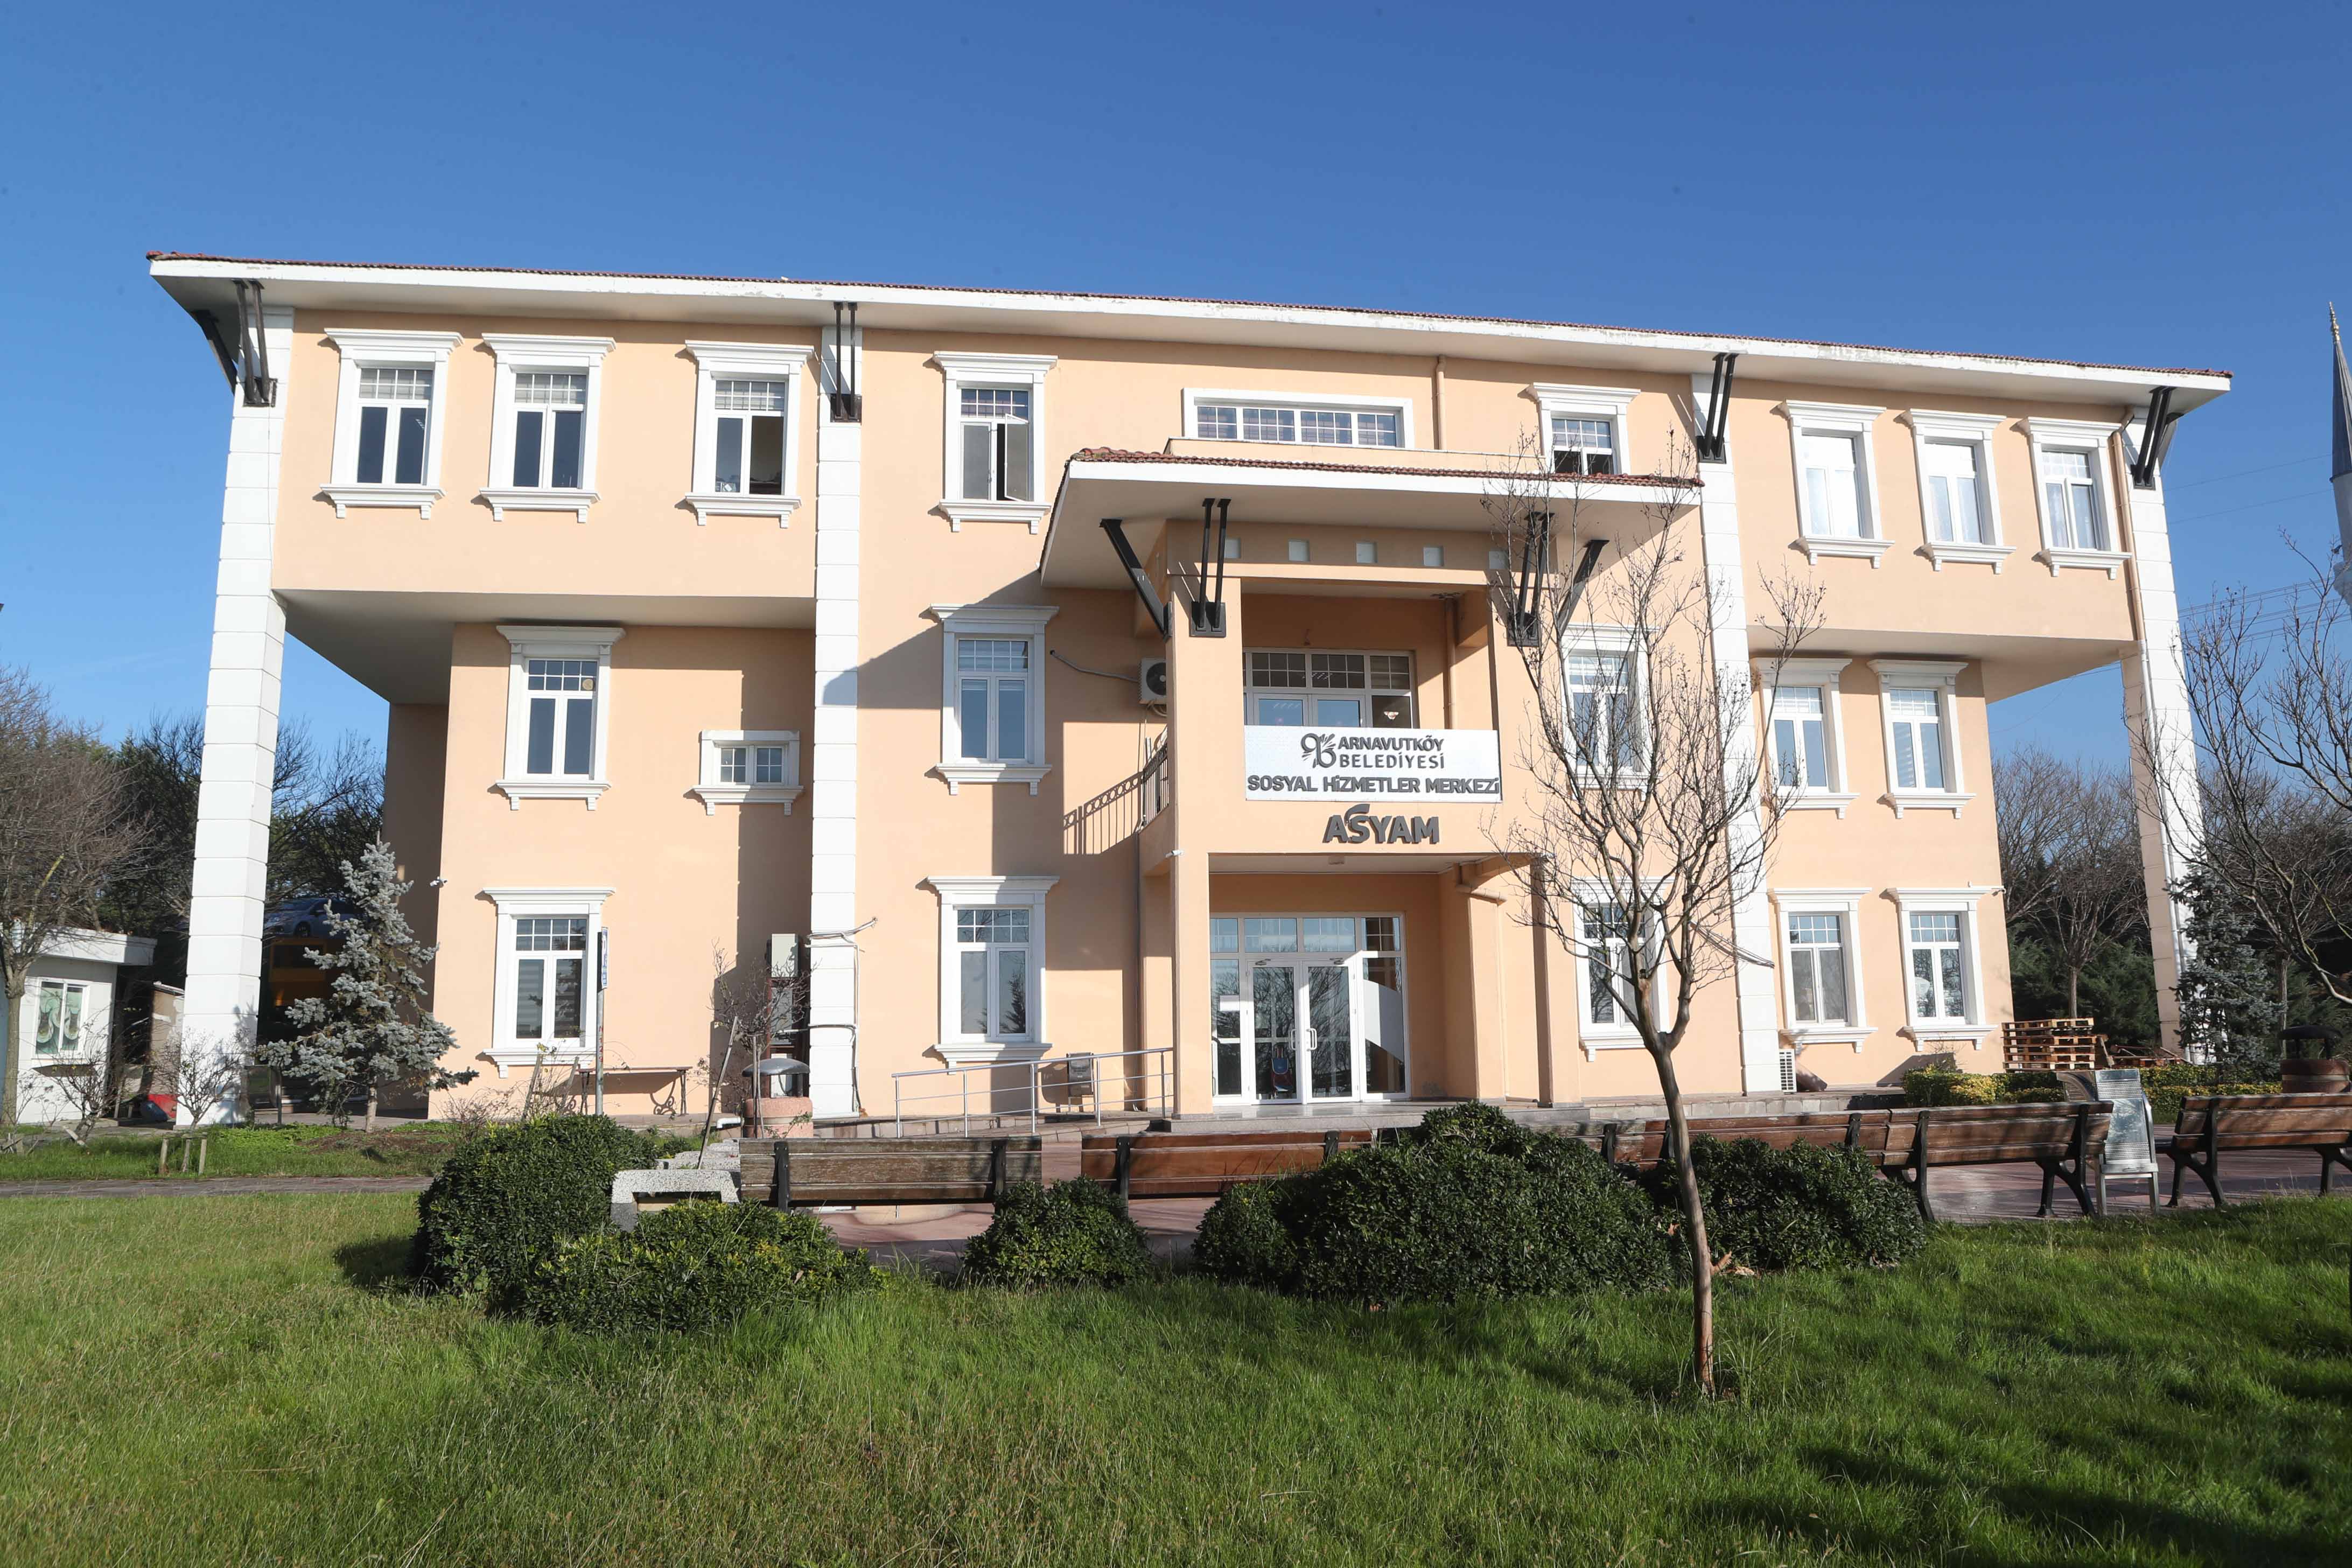 Arnavutköy Sosyal Yardımlaşma Merkezi (ASYAM)